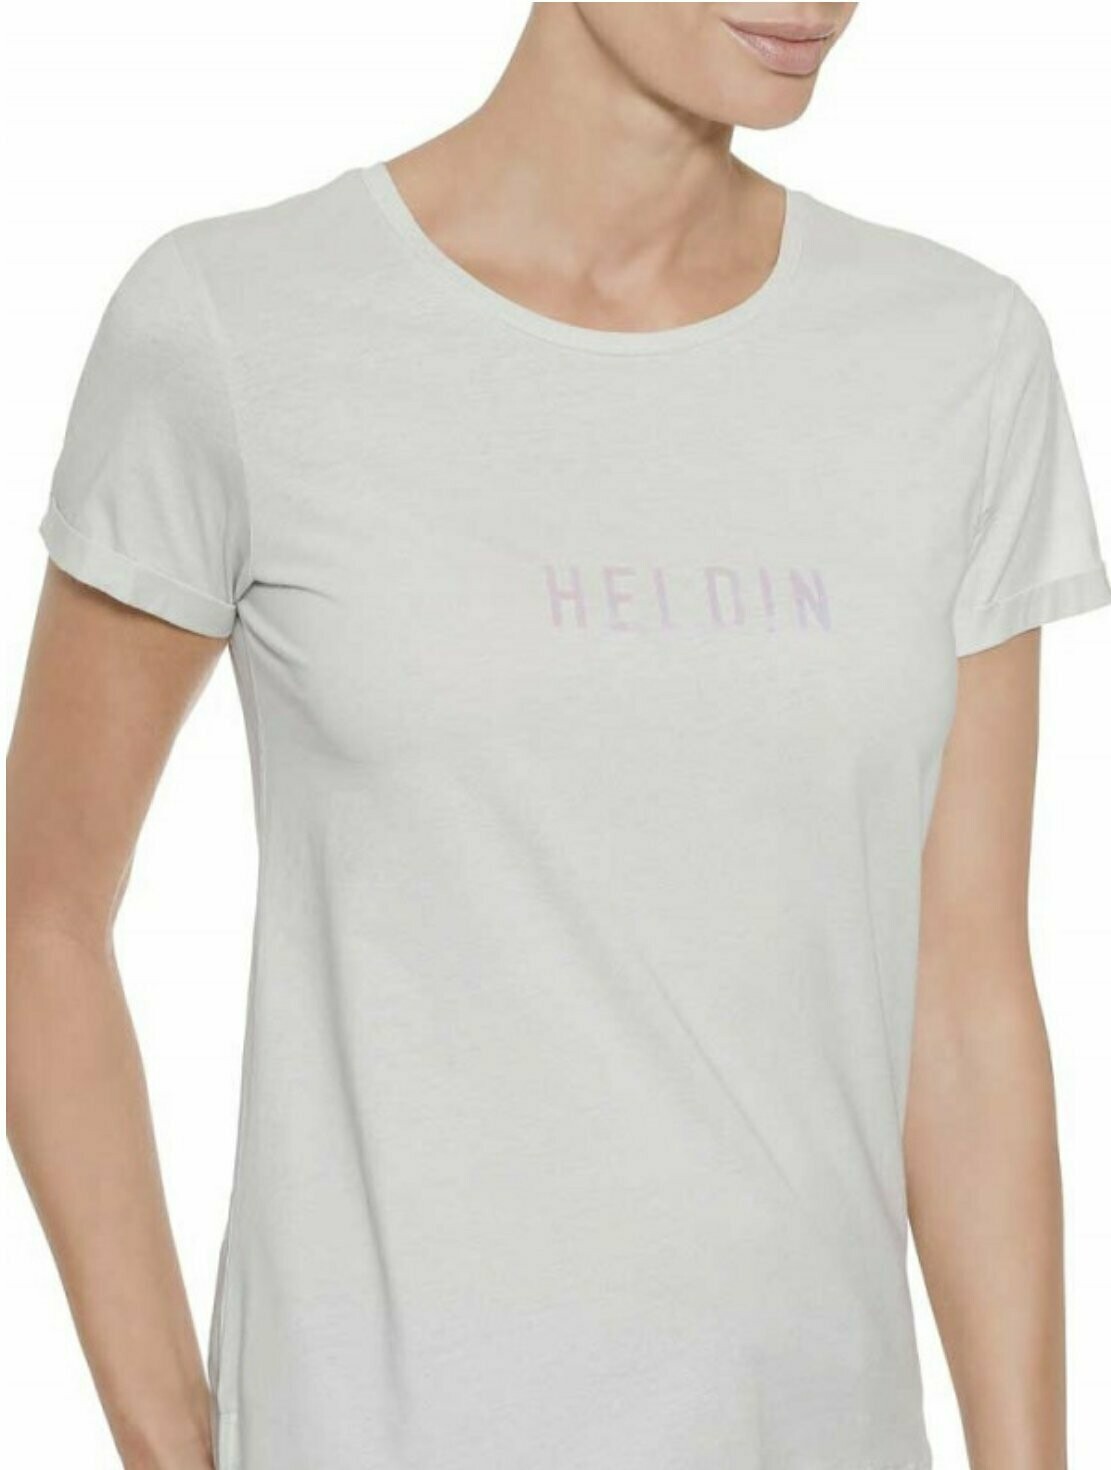 Herrlicher - T-Shirt HELDIN